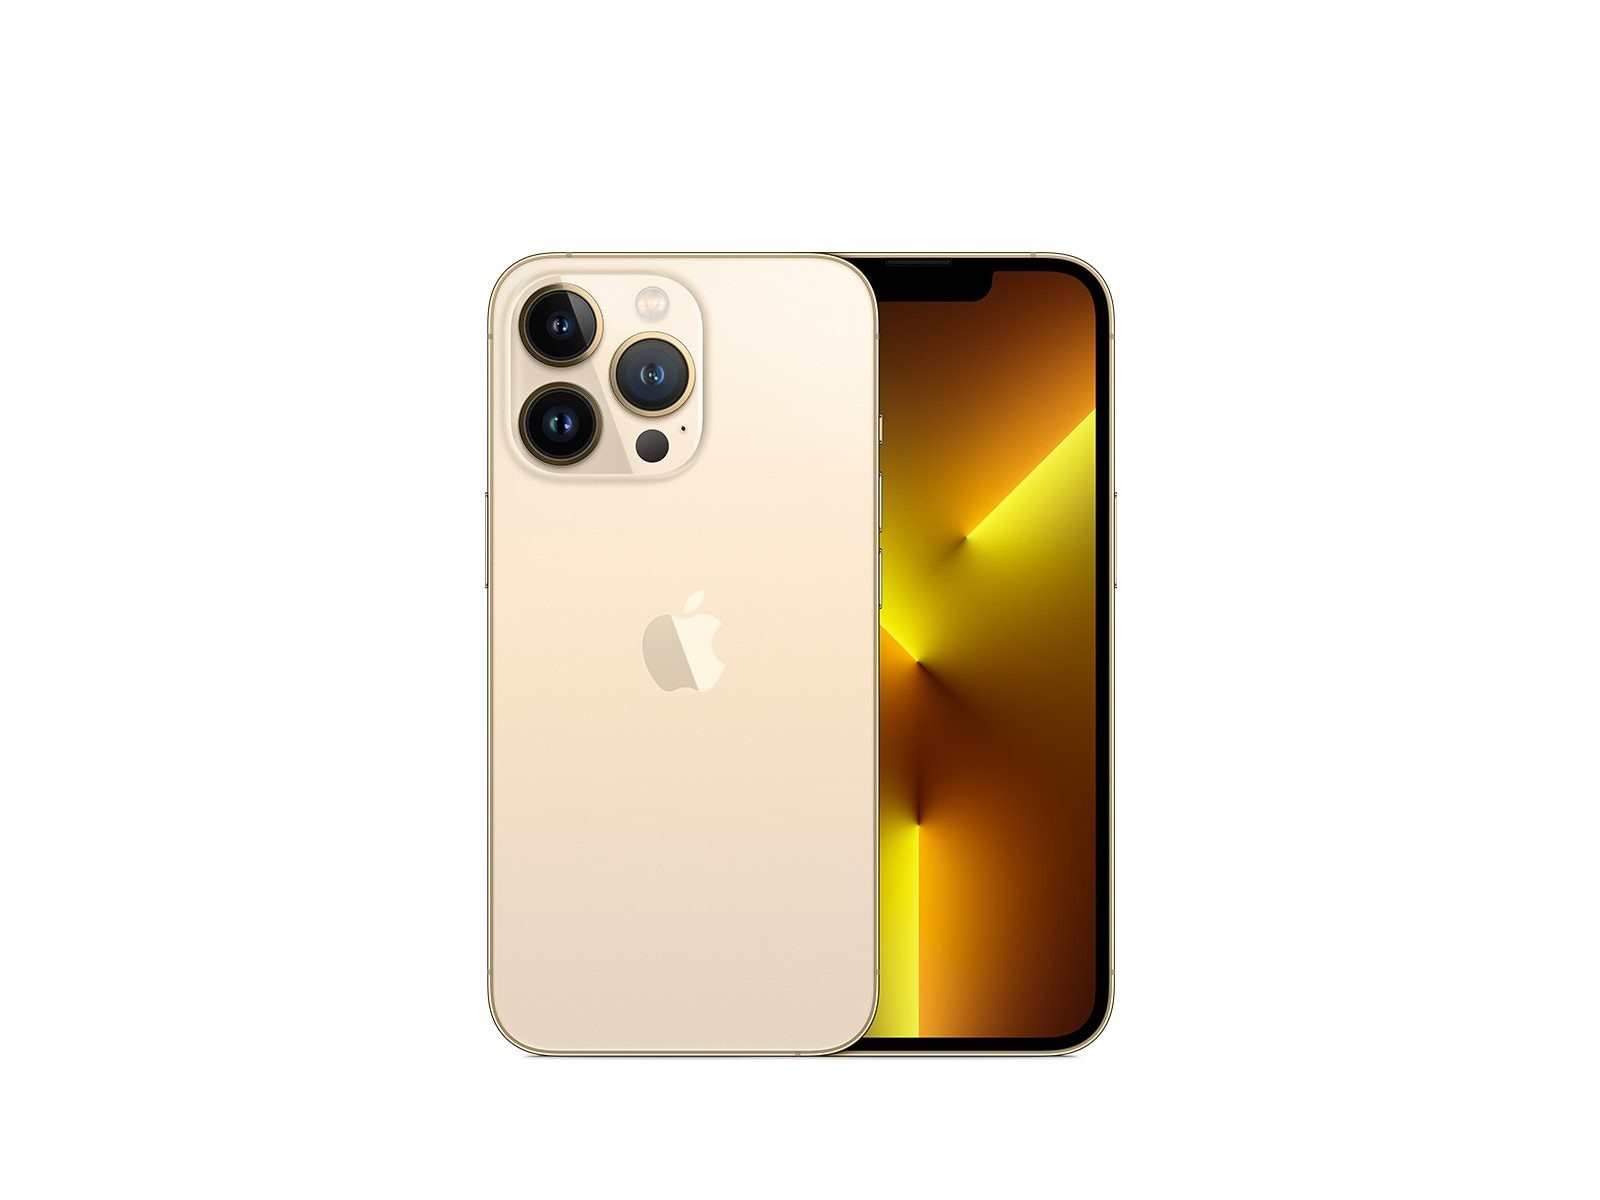 Đánh giá về Apple iPhone 13 Pro tiết lộ rằng điện thoại mới sẽ mang đến cho bạn nhiều tính năng đột phá, cùng với khả năng chụp ảnh và quay video tuyệt vời, không có lý do gì mà bạn không thể trải nghiệm điện thoại này.